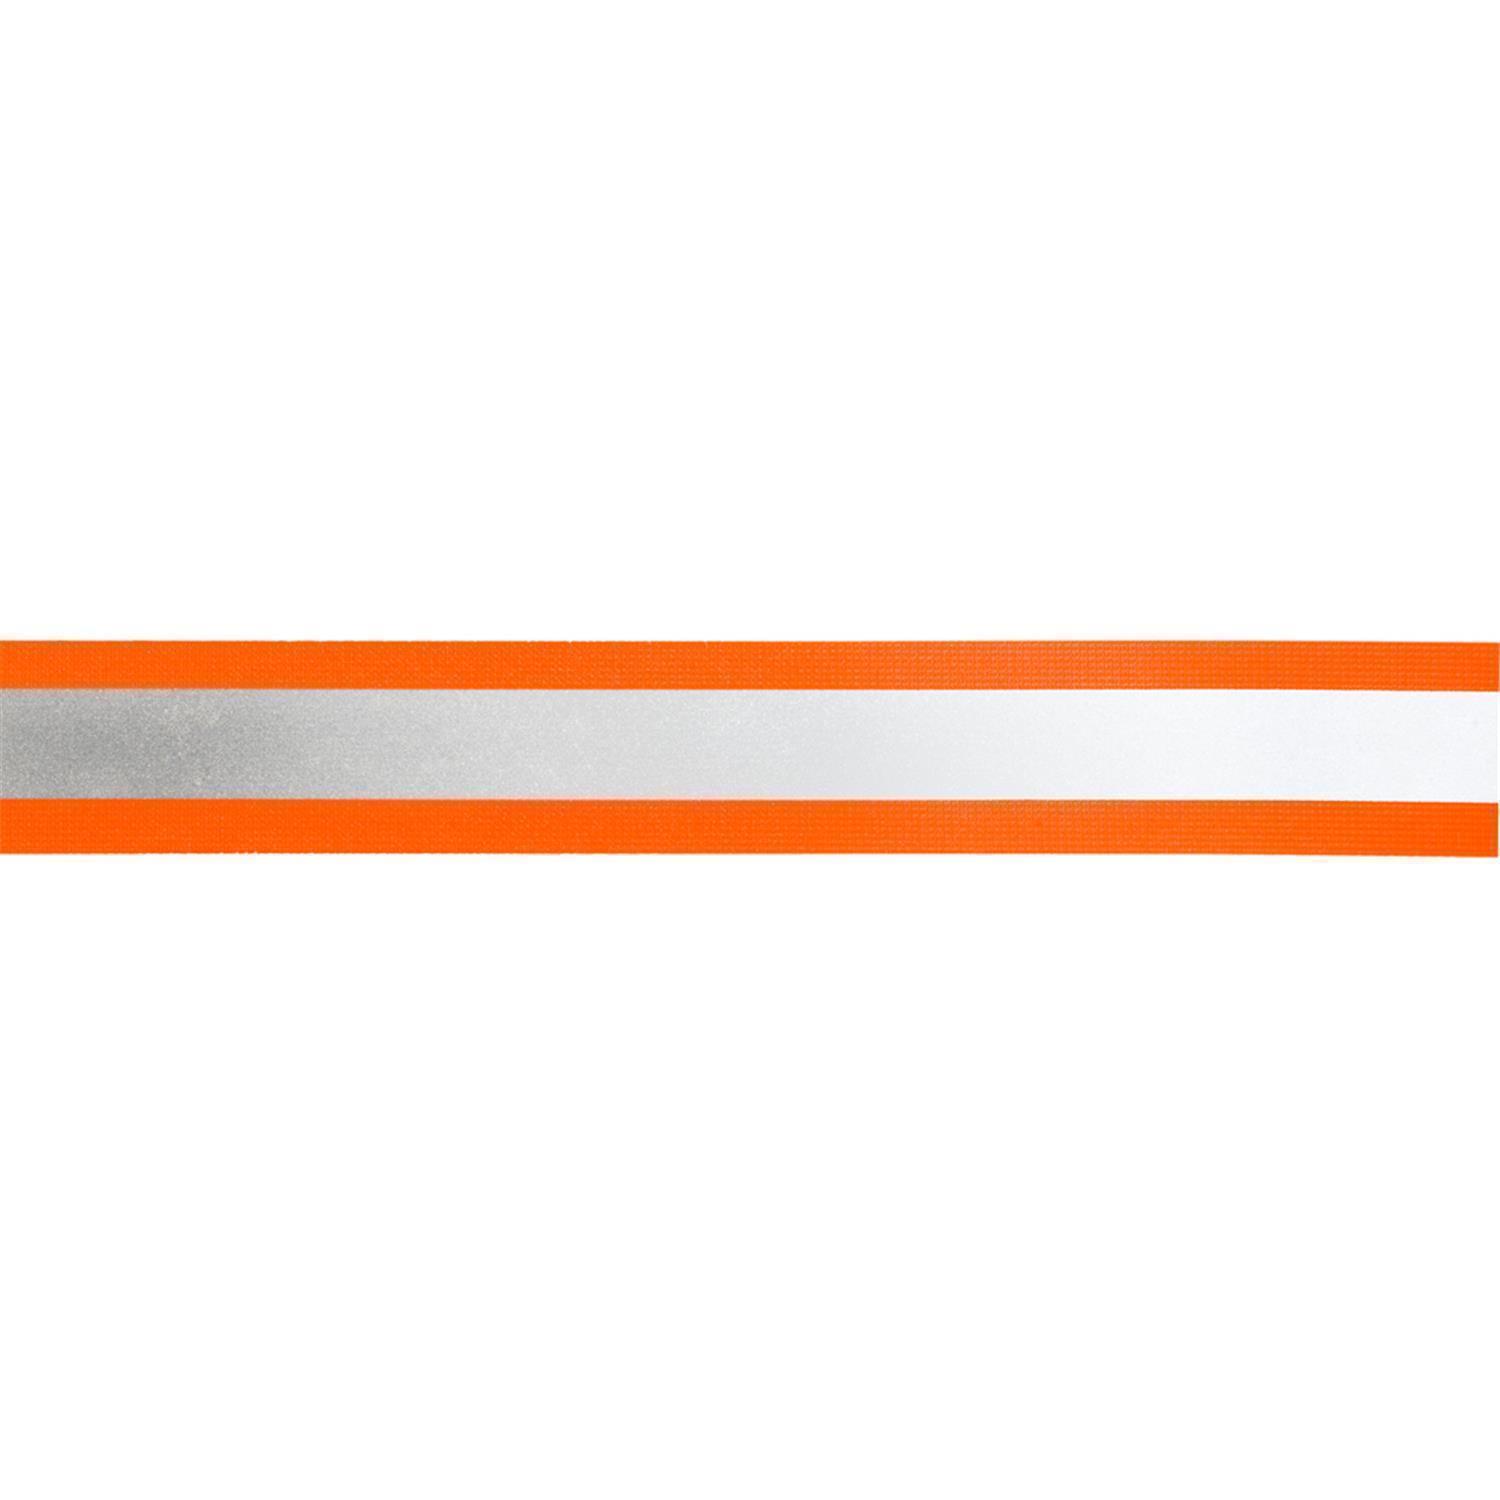 Reflektorband 40mm breit in 2 Farben orange-silber 10 Meter